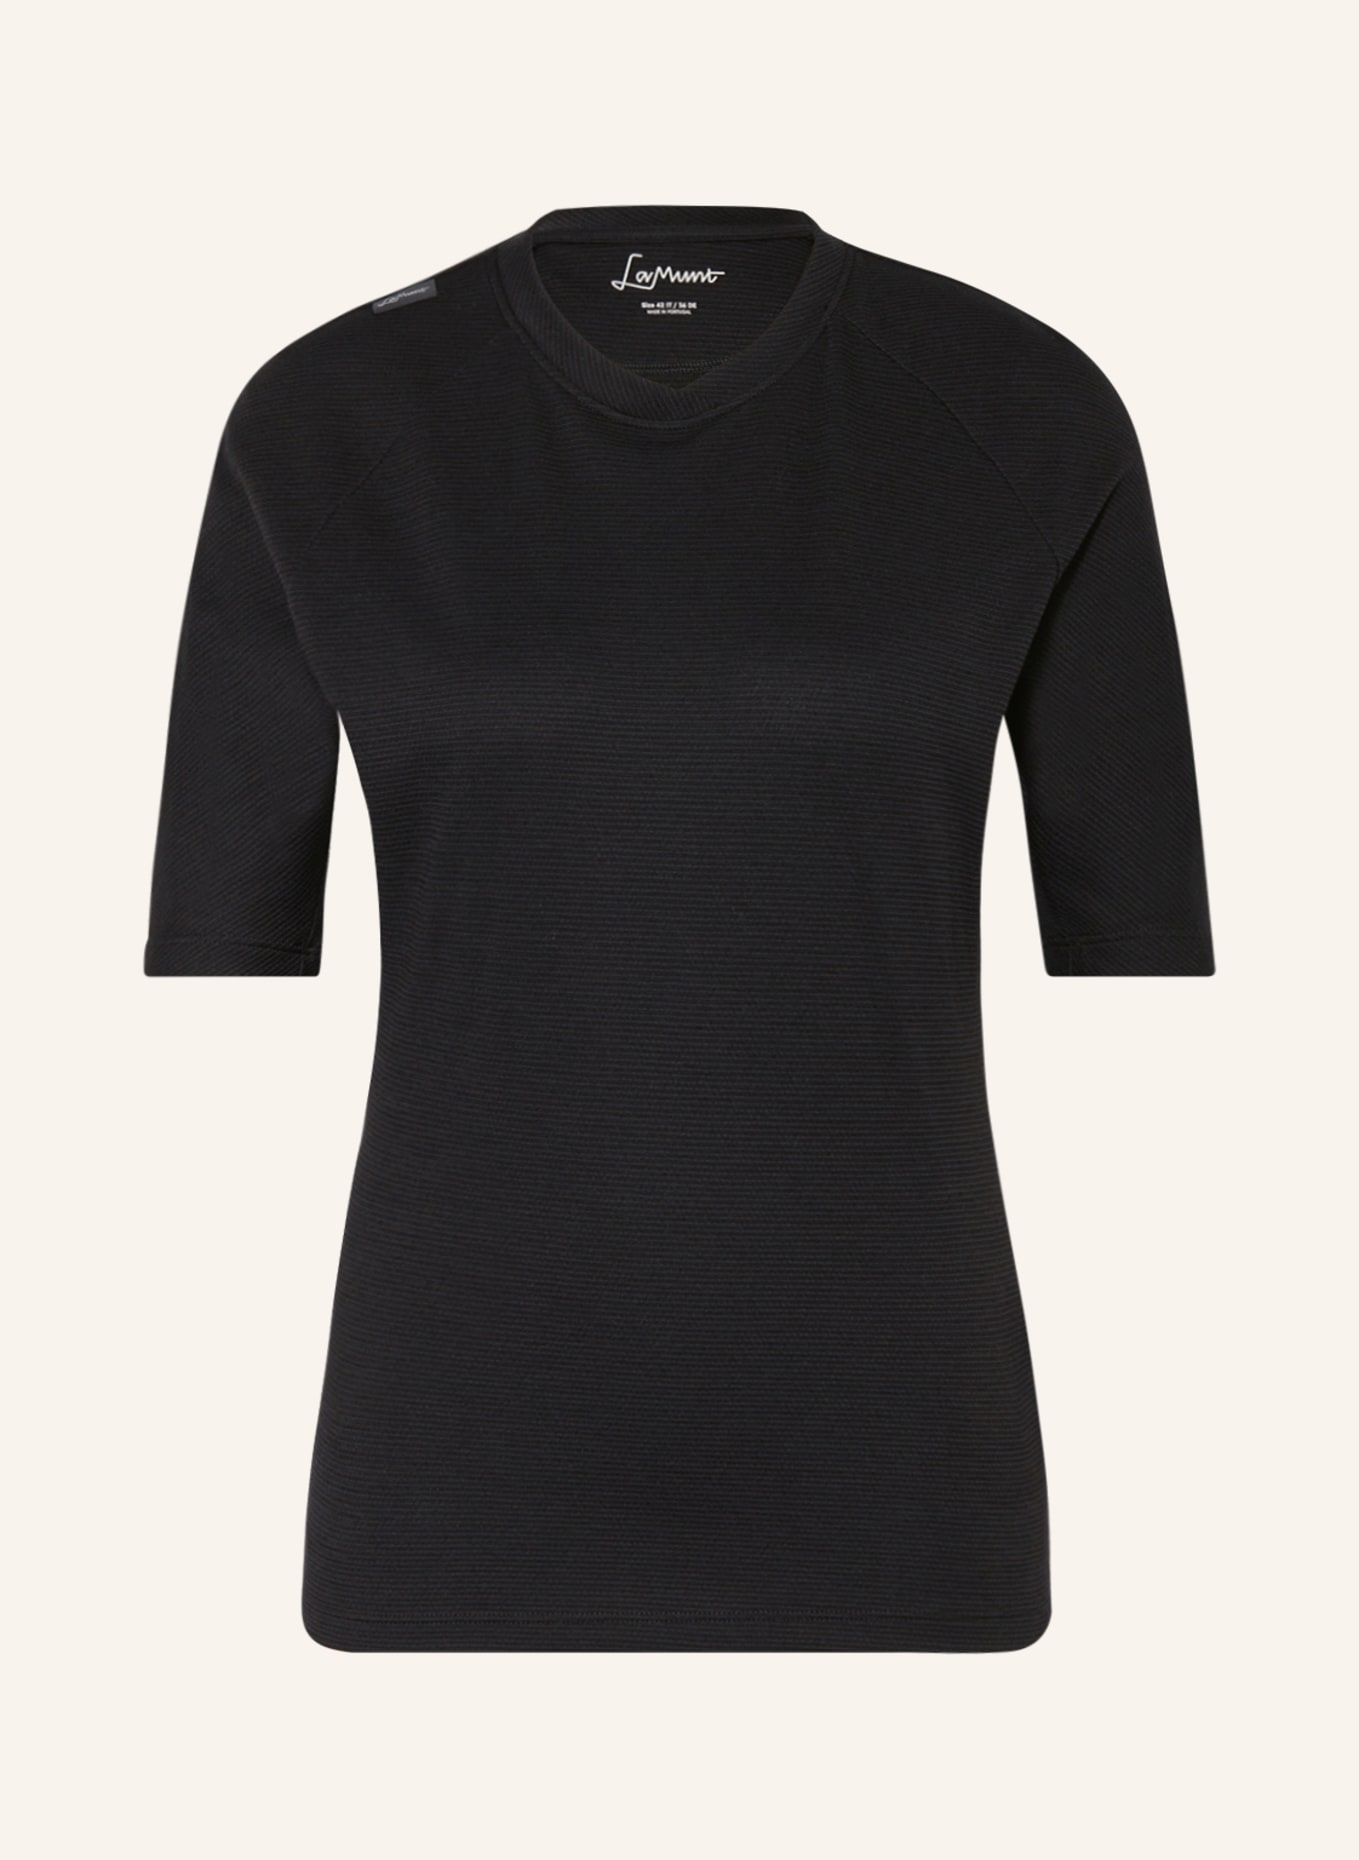 LaMunt T-Shirt MARTINE mit Merinowolle, Farbe: SCHWARZ (Bild 1)